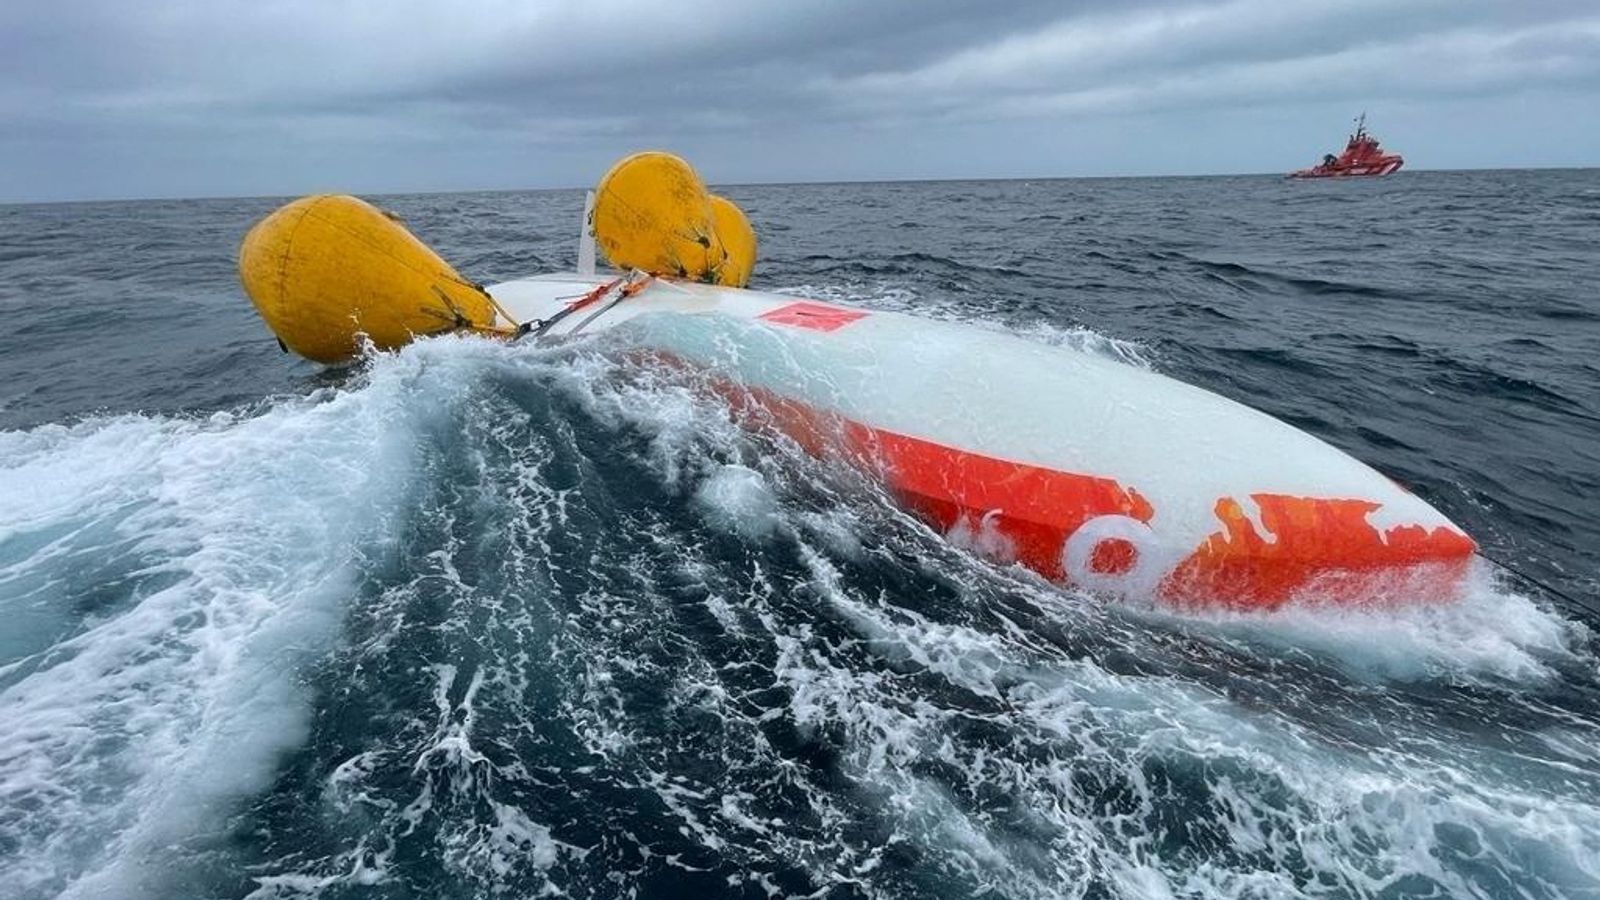 Seorang pria Prancis berusia 62 tahun bertahan selama 16 jam dalam perahu terbalik di Samudra Atlantik sebelum penyelamatan “hampir mustahil” |  berita Dunia